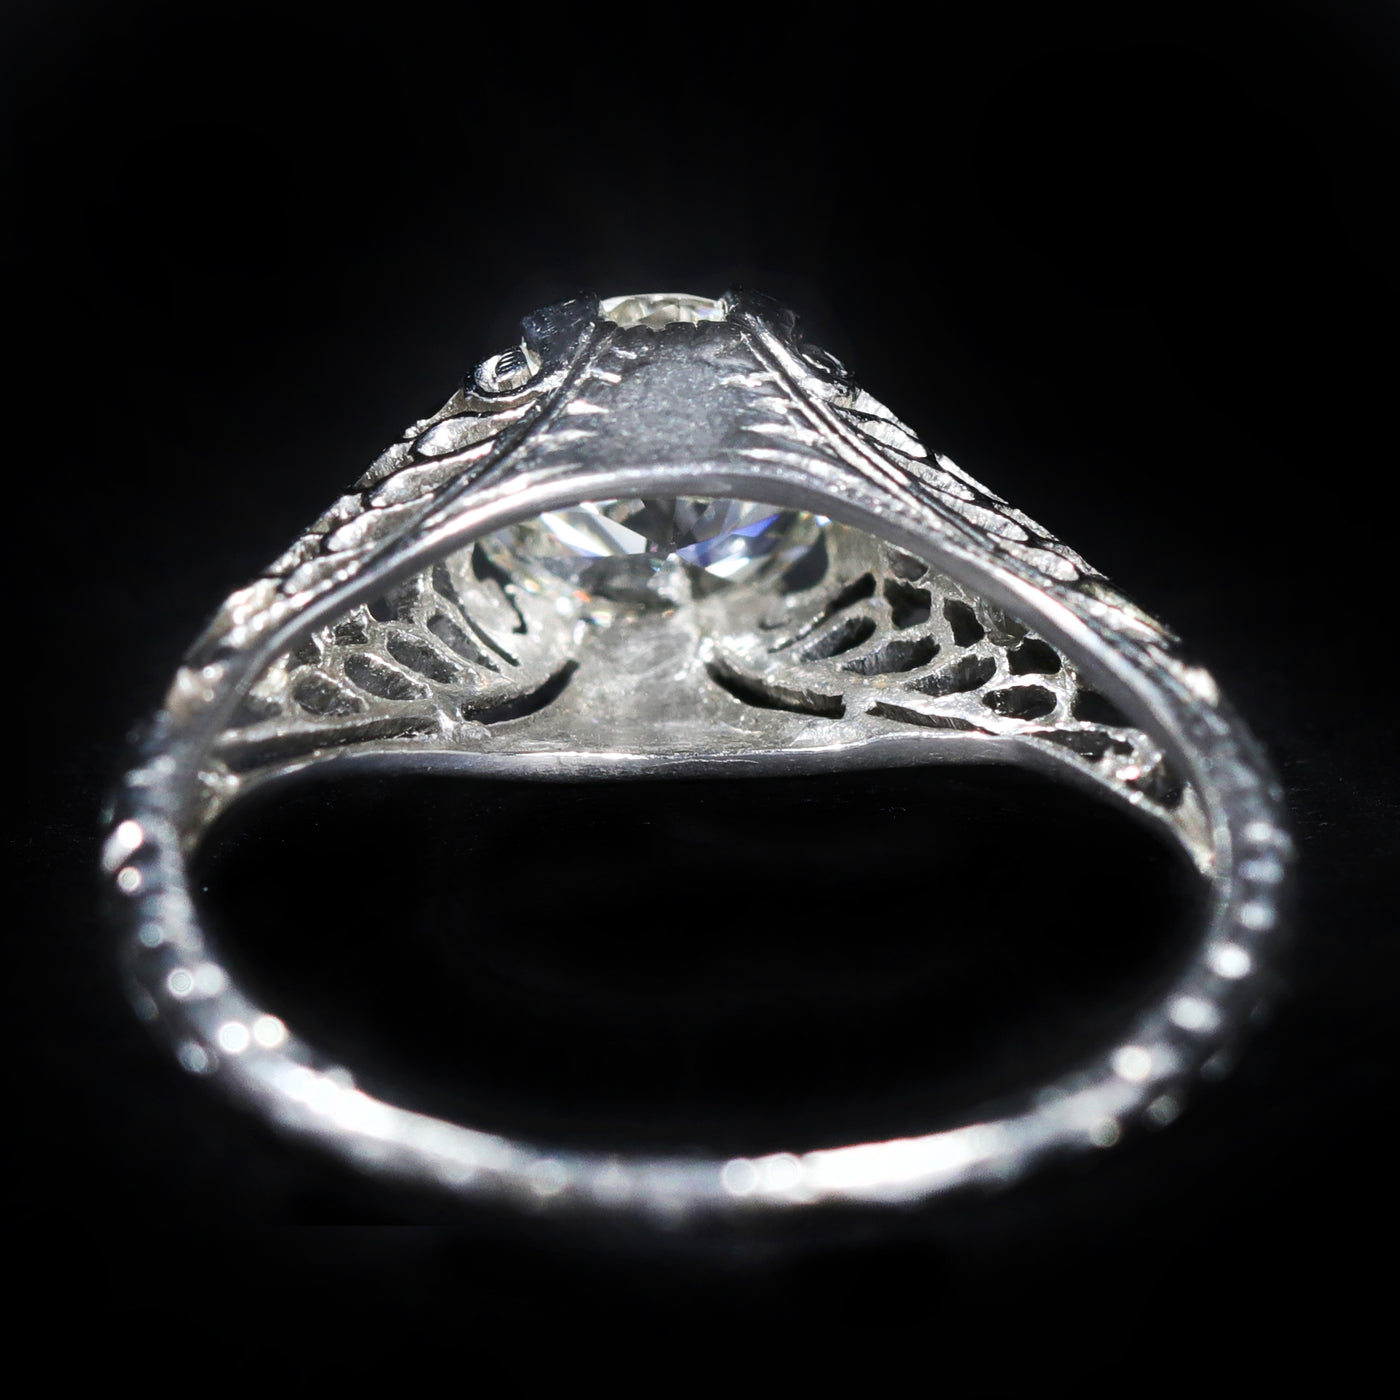 Art Deco Platinum 0.90 Carat Old European Cut Diamond Engagement Ring